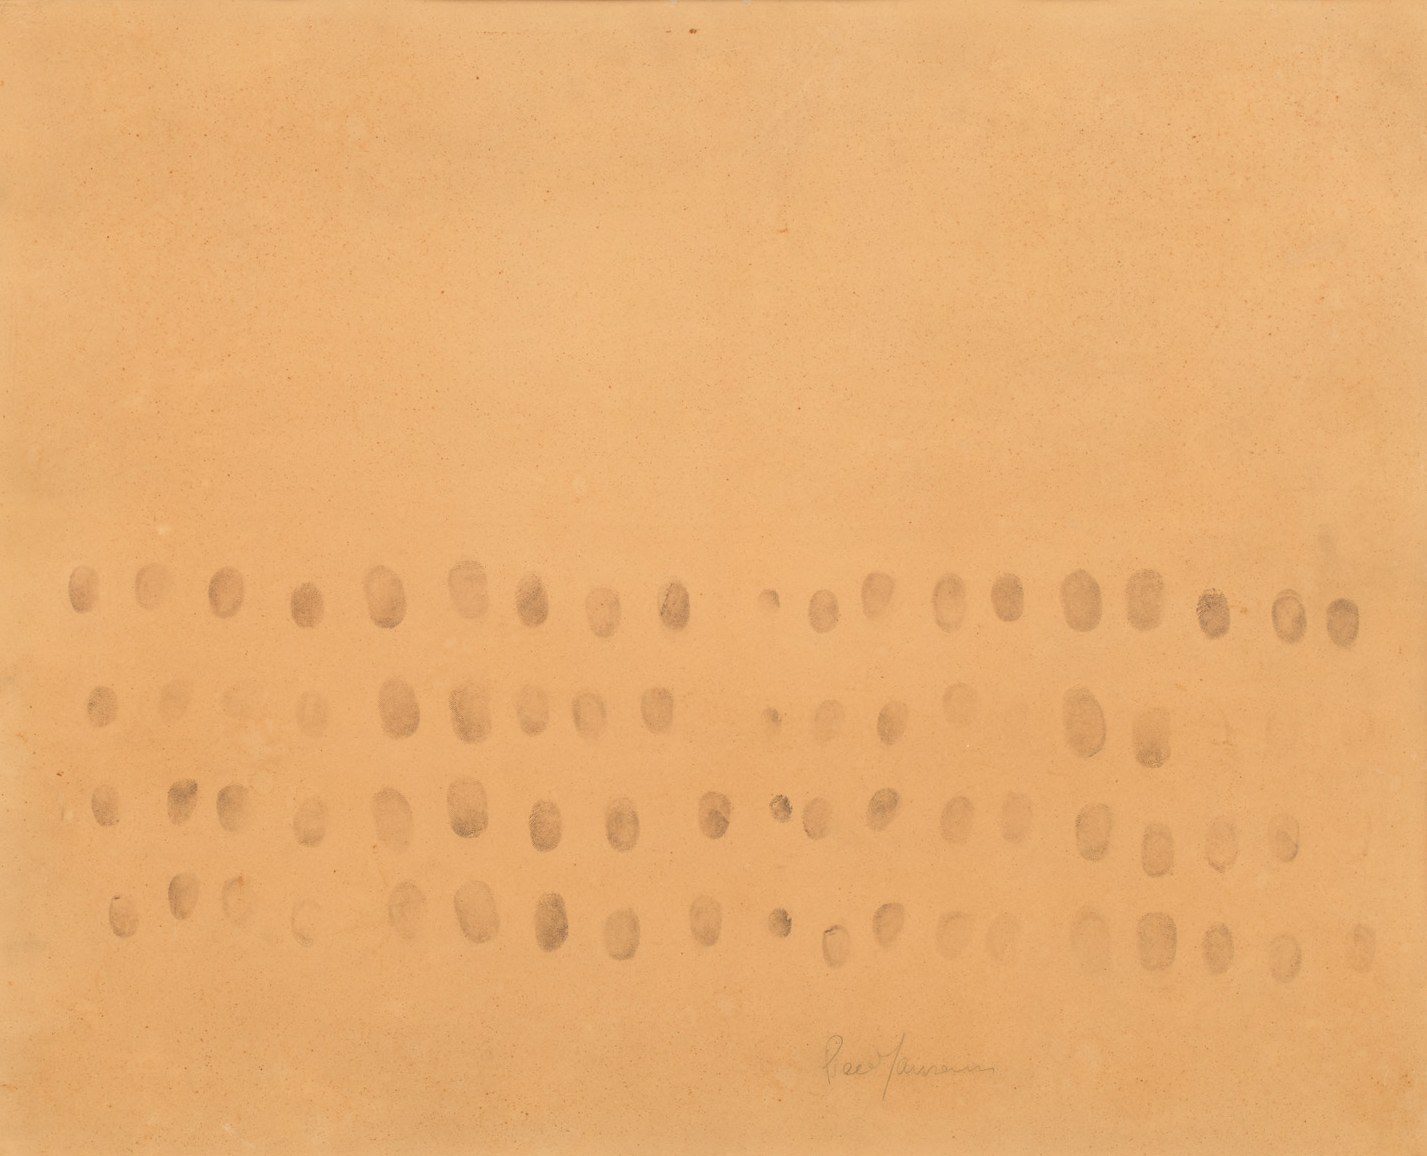 Piero Manzoni

&amp;ldquo;Impronte&amp;rdquo;, ca. 1961

Ink on paper

19 3/4 x 24 inches

50 x 61 cm

MAN 36

$200,000